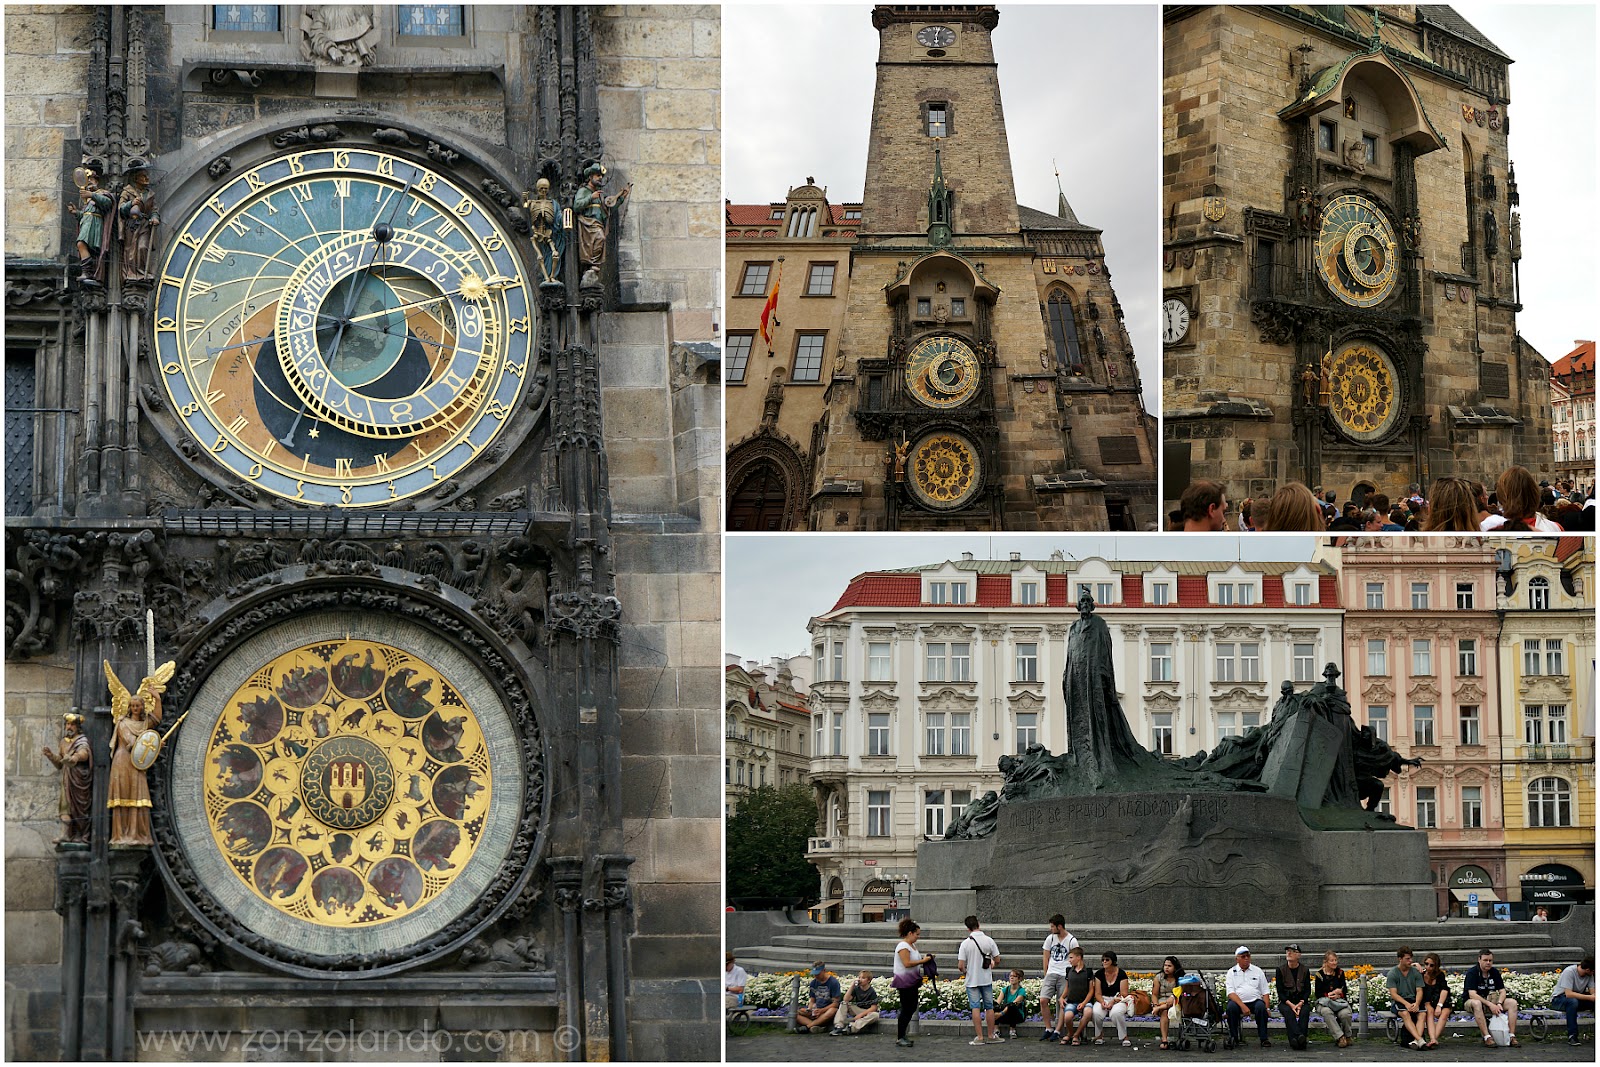 Cosa fare e vedere a Praga, viaggio in Repubblica Ceca, racconti e consigli utili - Visit Prague suggestions and tips